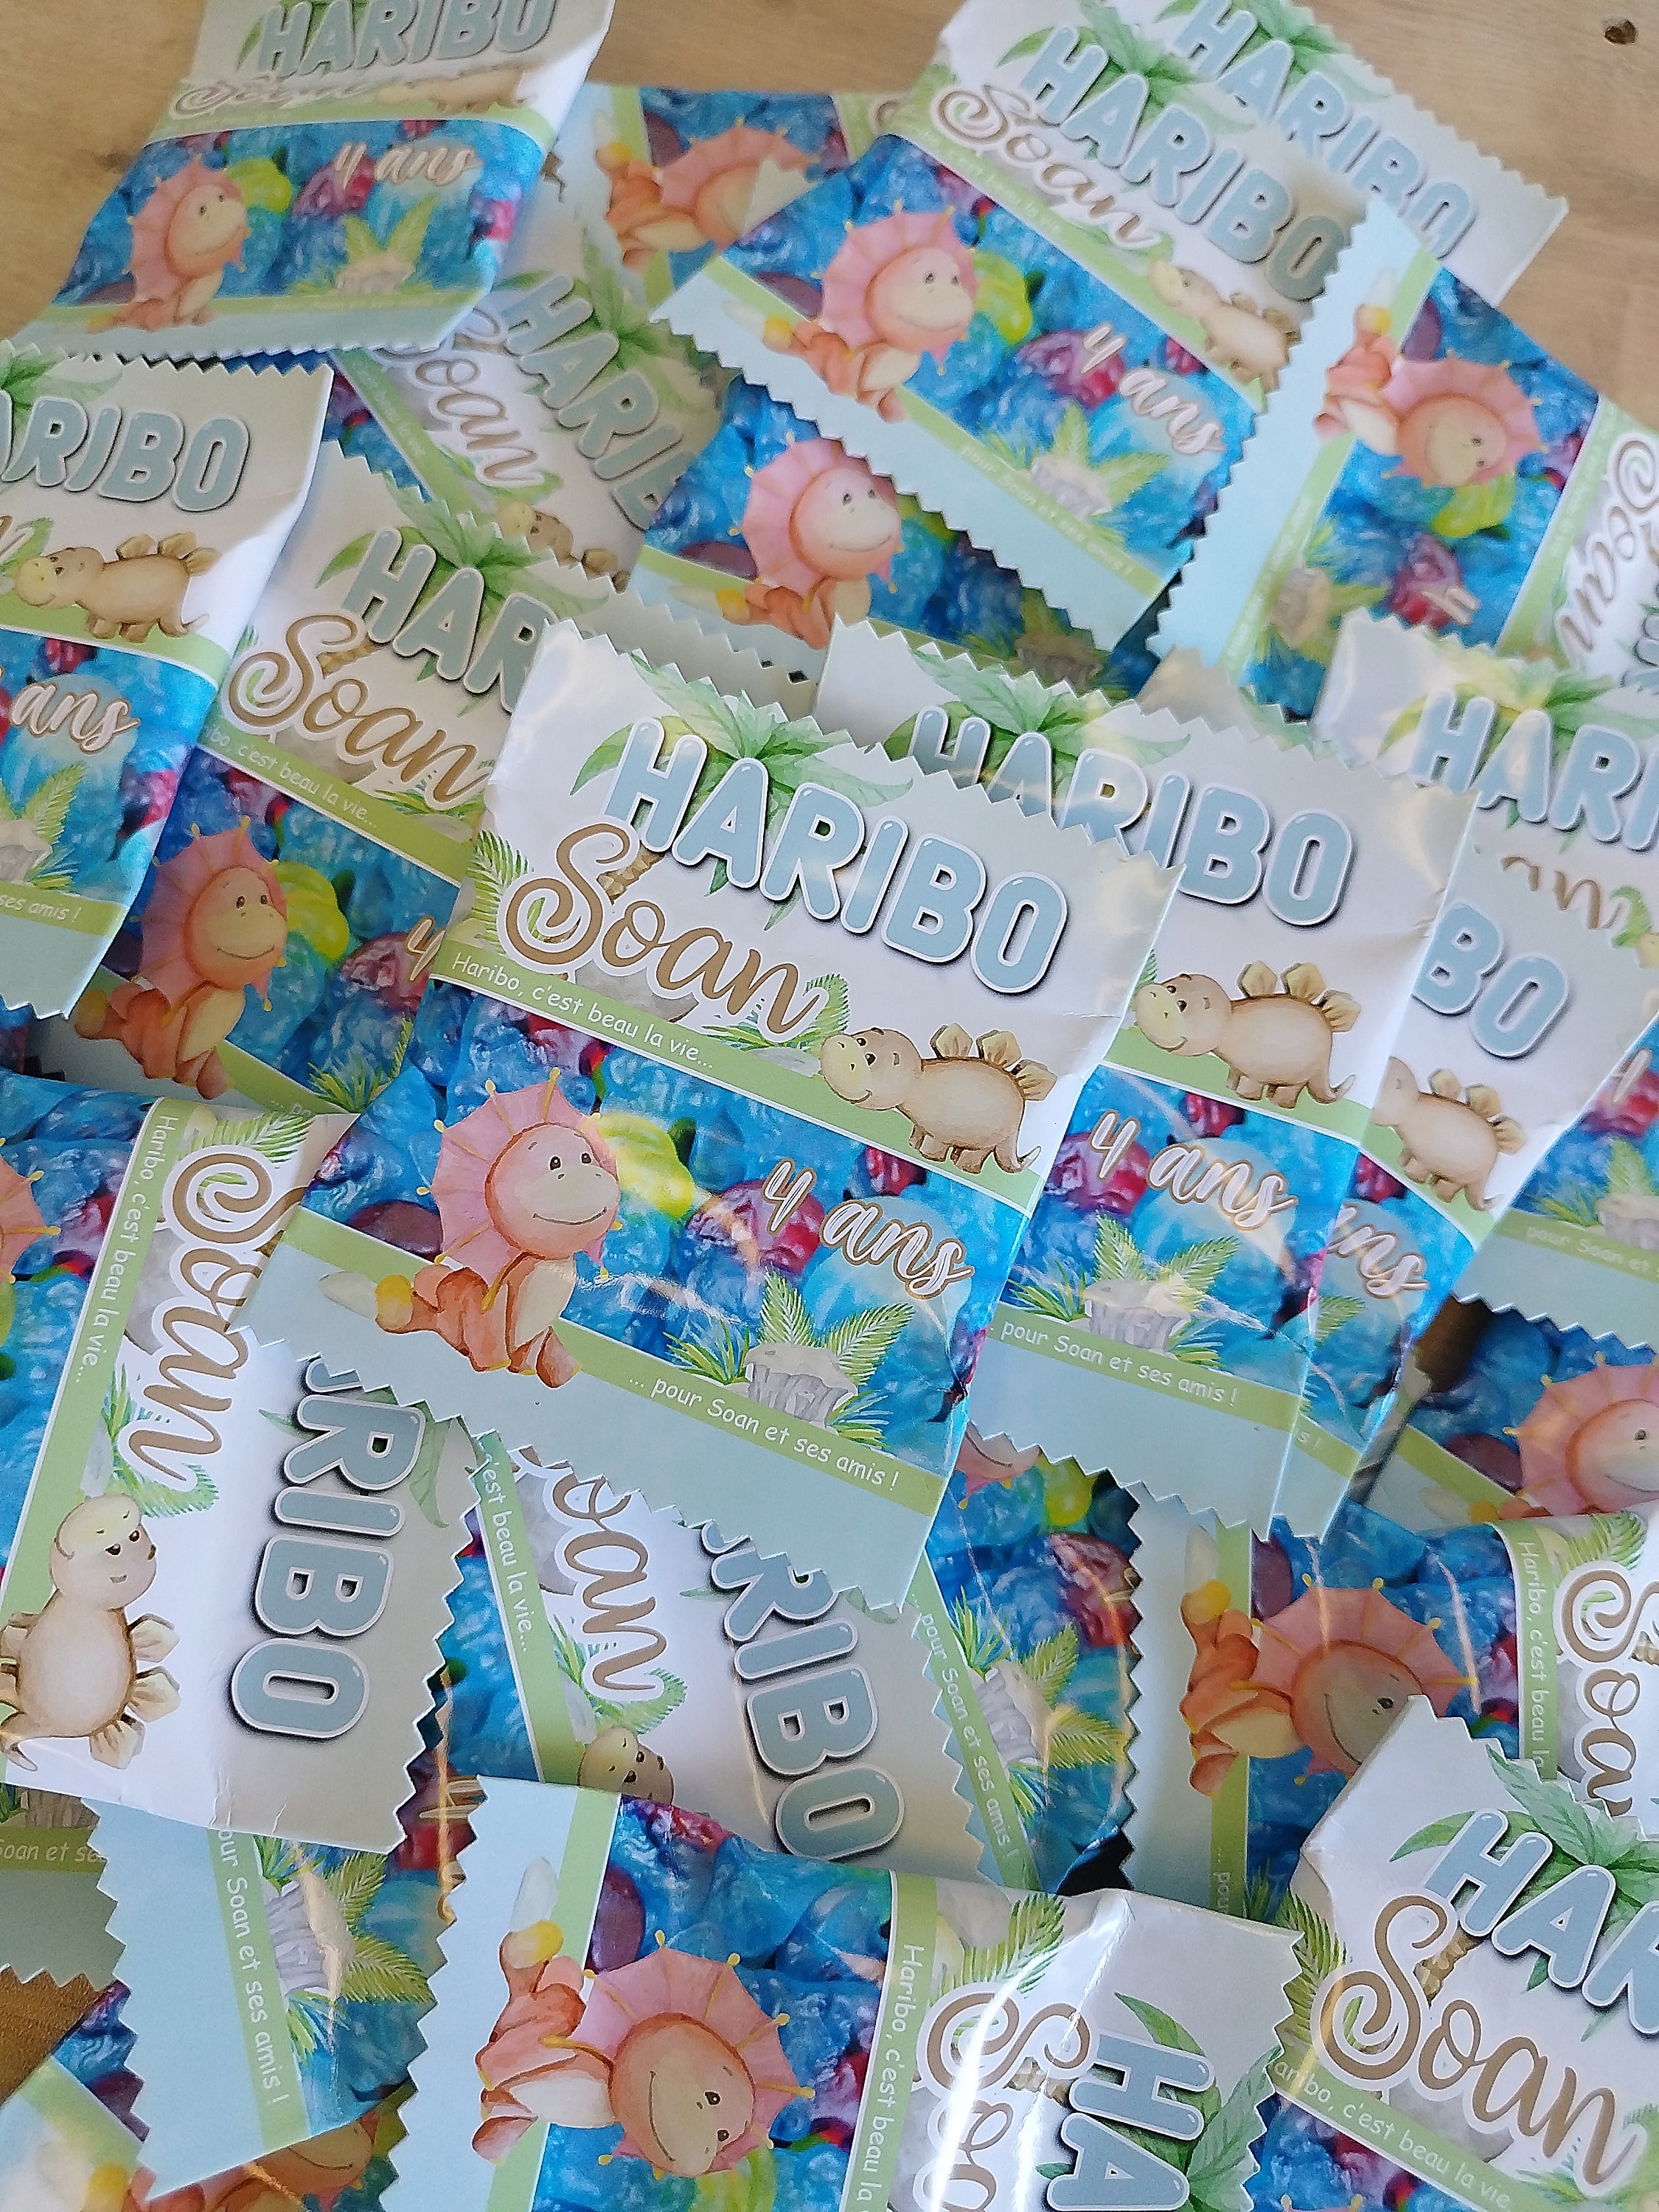 Lot De 100 Sachets De Bonbons Haribo® Personnalisés 'Tagada